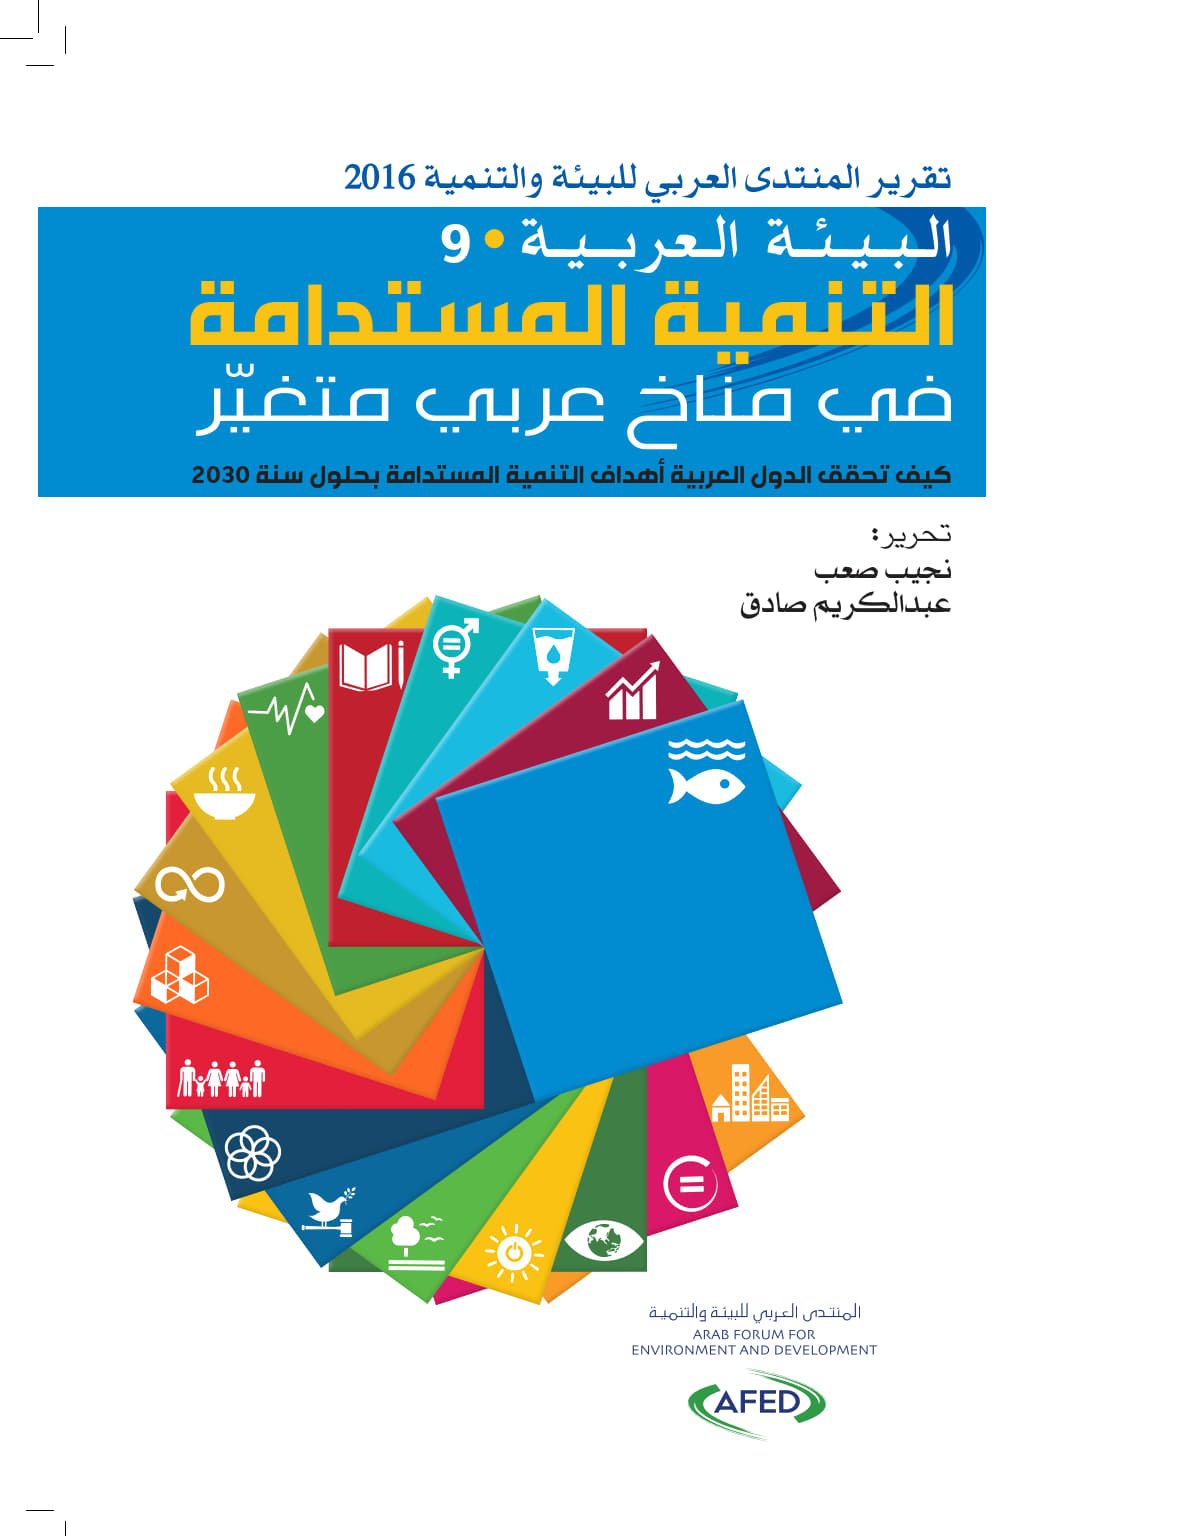 تقرير المنتدى العربي للبيئة والتنمية 2016